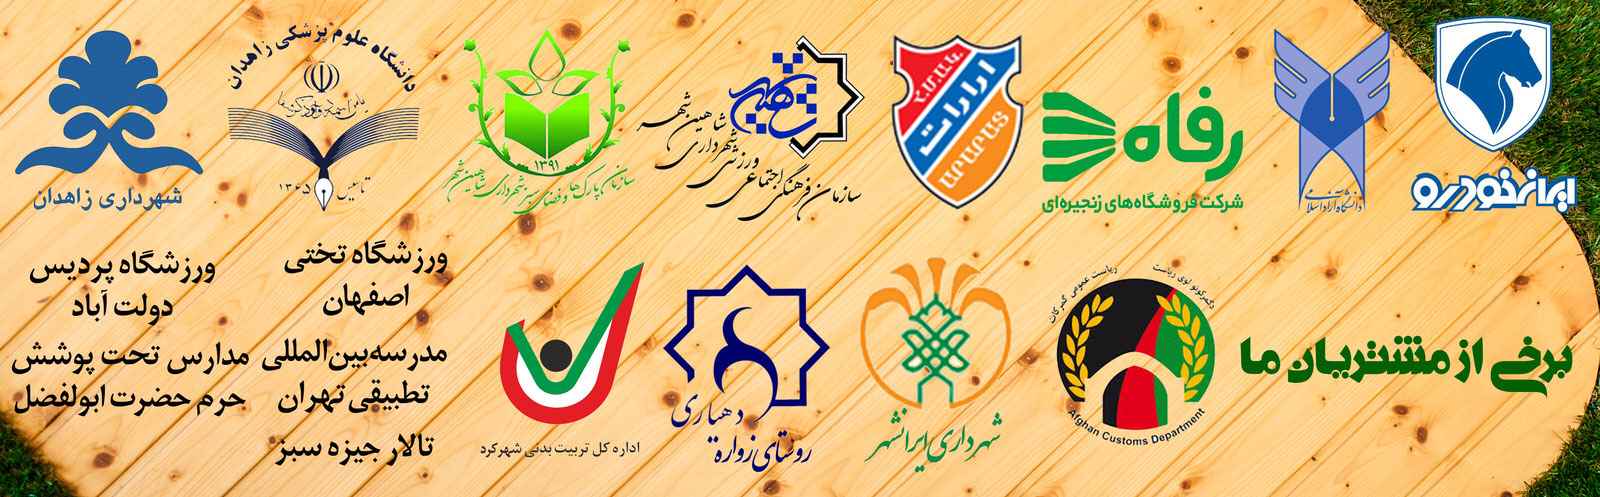 چمن مصنوعی ورزشی و تزئینی پروژه های ایران